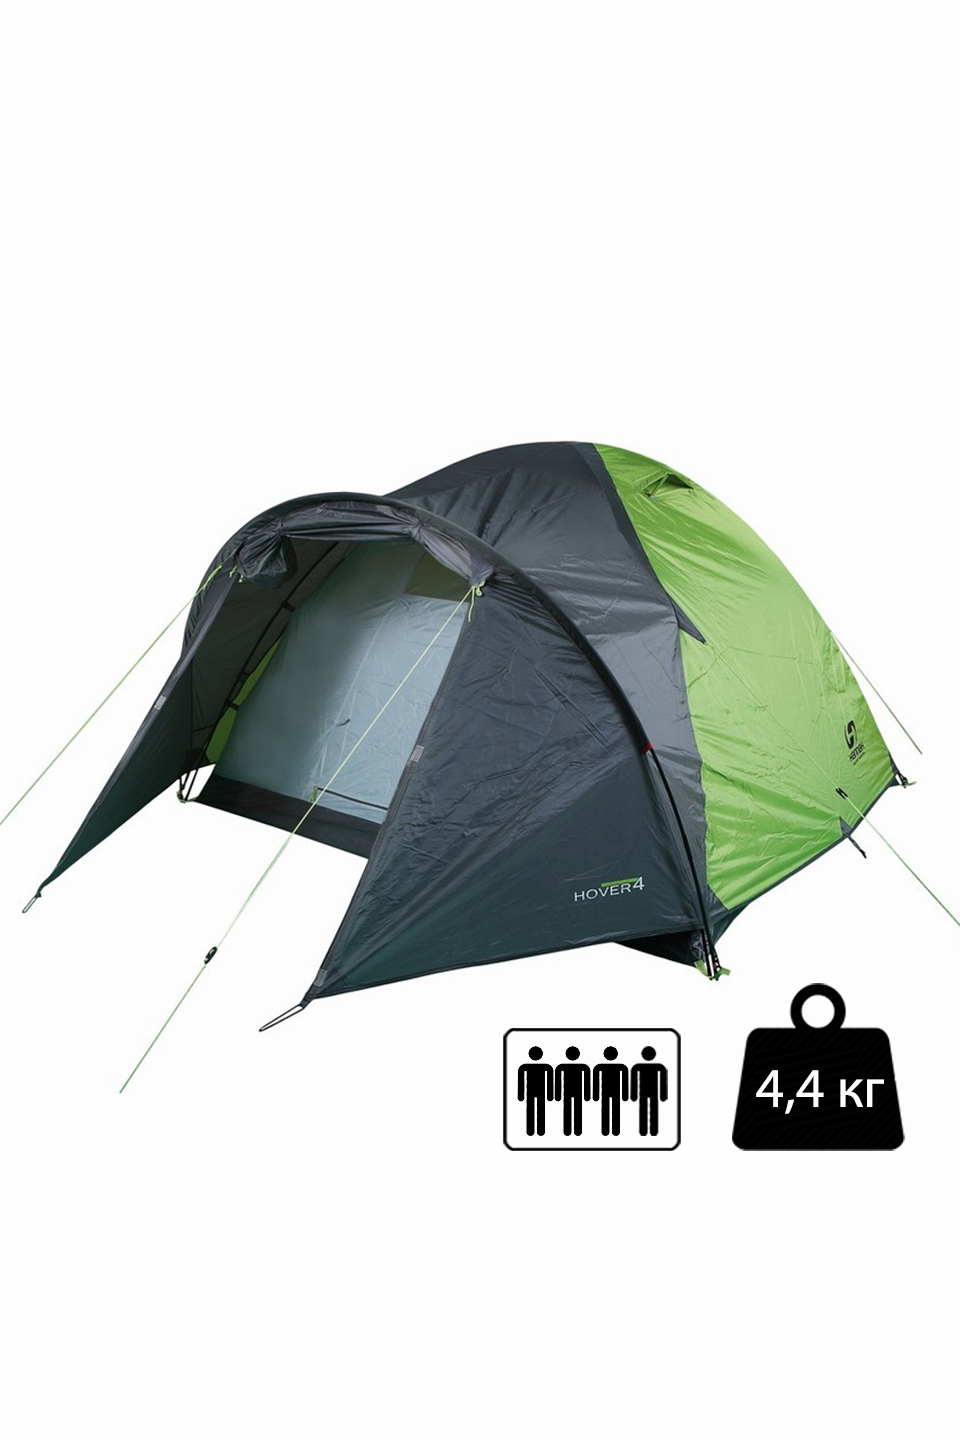 Палатка Hannah Hover 4 spring green/cloudy gray четырехместная - 10003223HHX